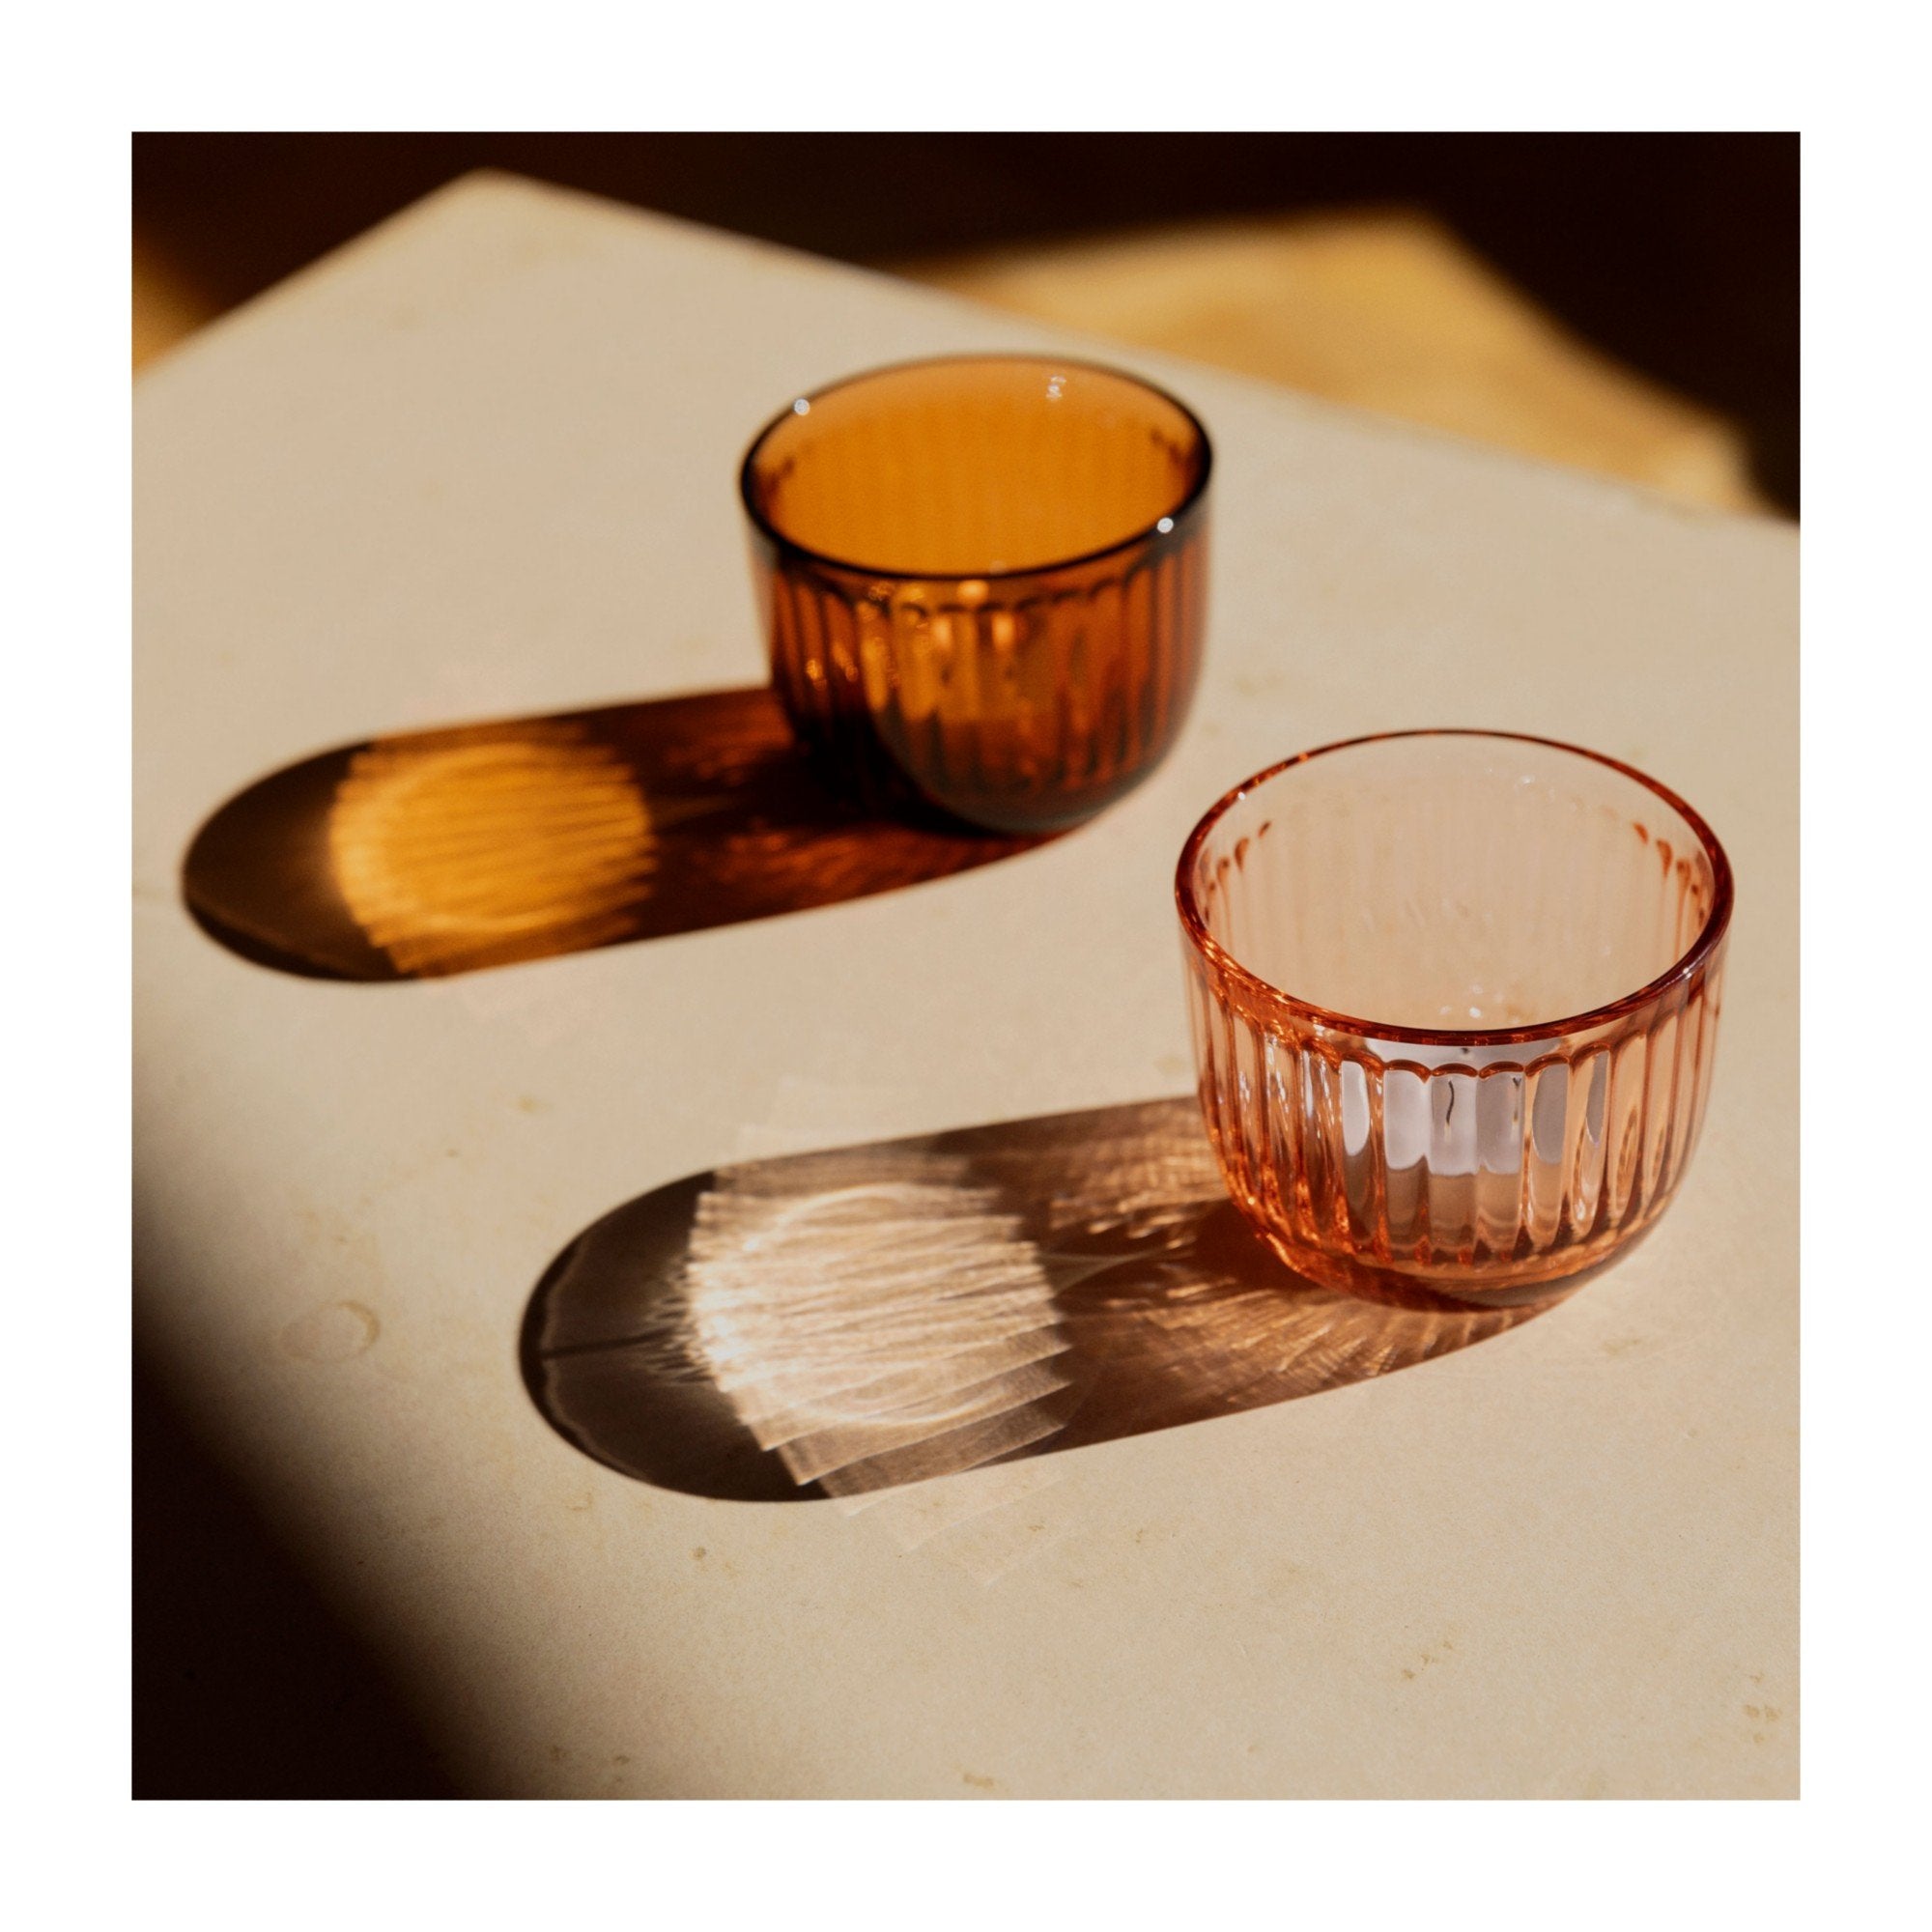 Iittala Raami Windlicht Glas Sevilla-Orange, 90mm-Leuchter-Iittala-6411923664363-1026953-IIT-inwohn